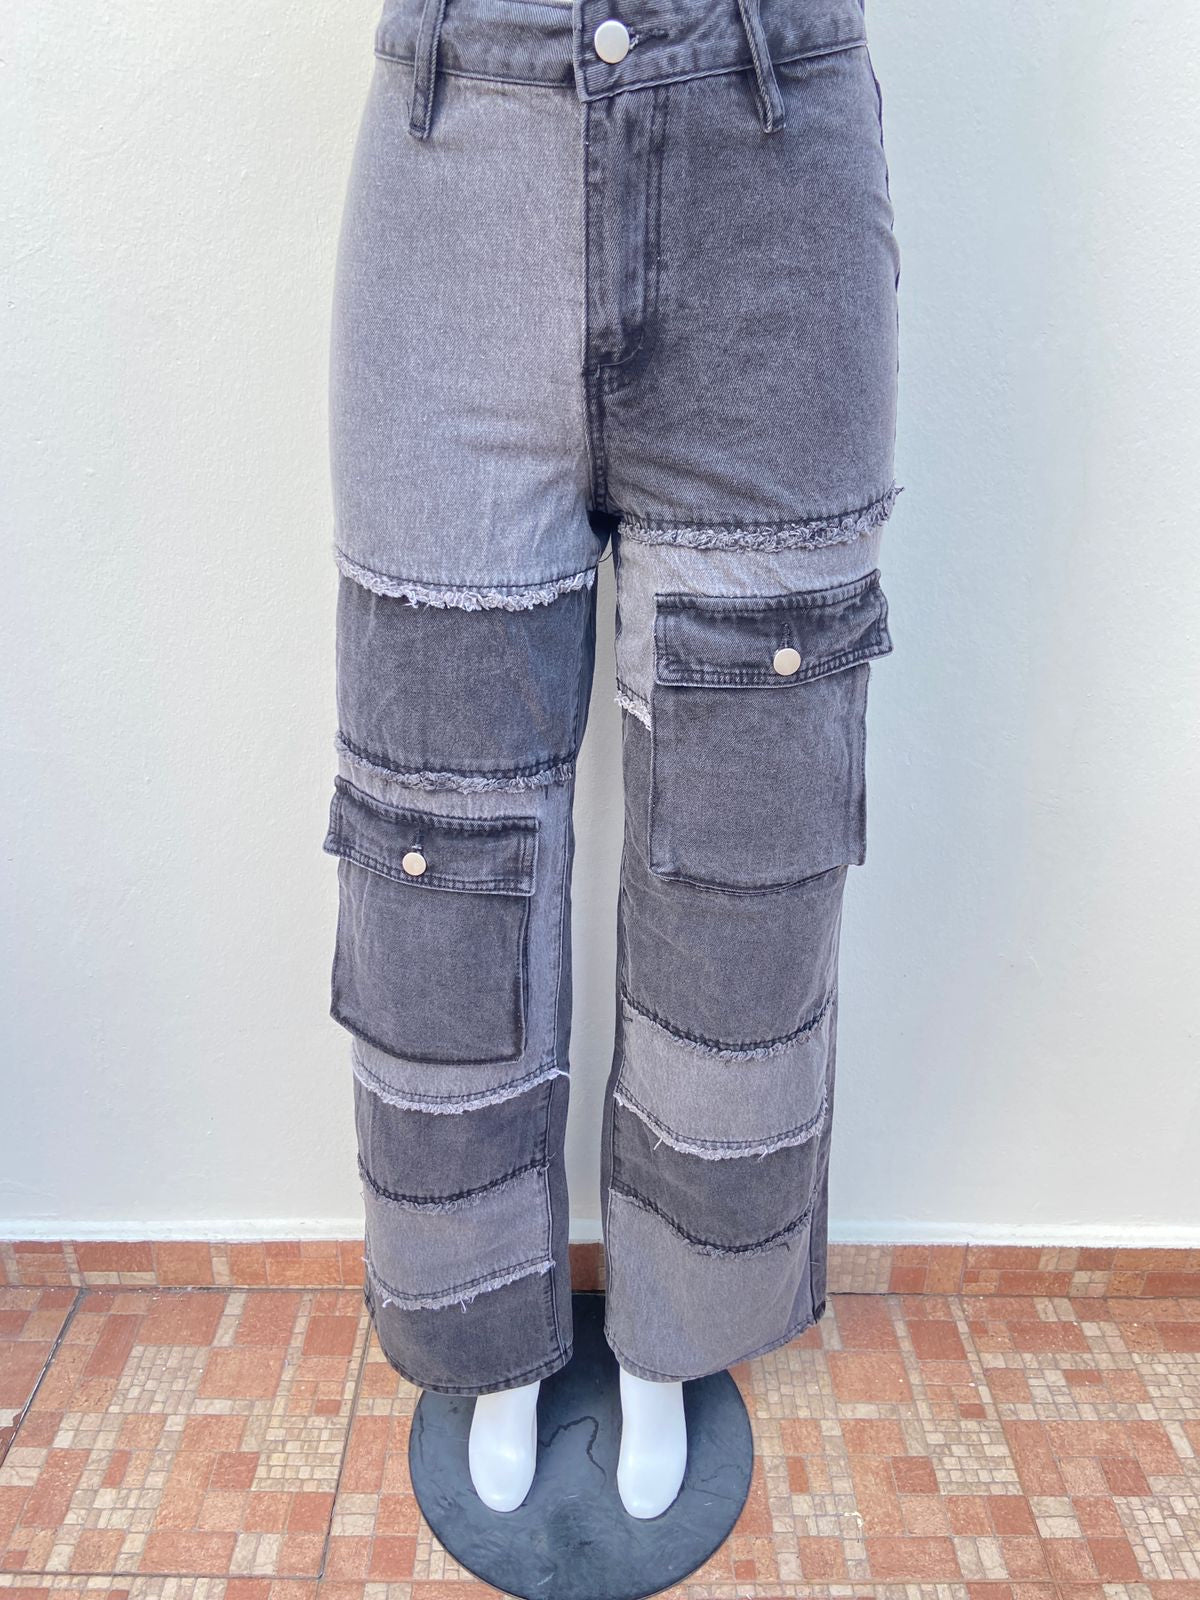 Pantalón FASHION NOVA original, negro con tonos gris y bolsillos en ambos lados.